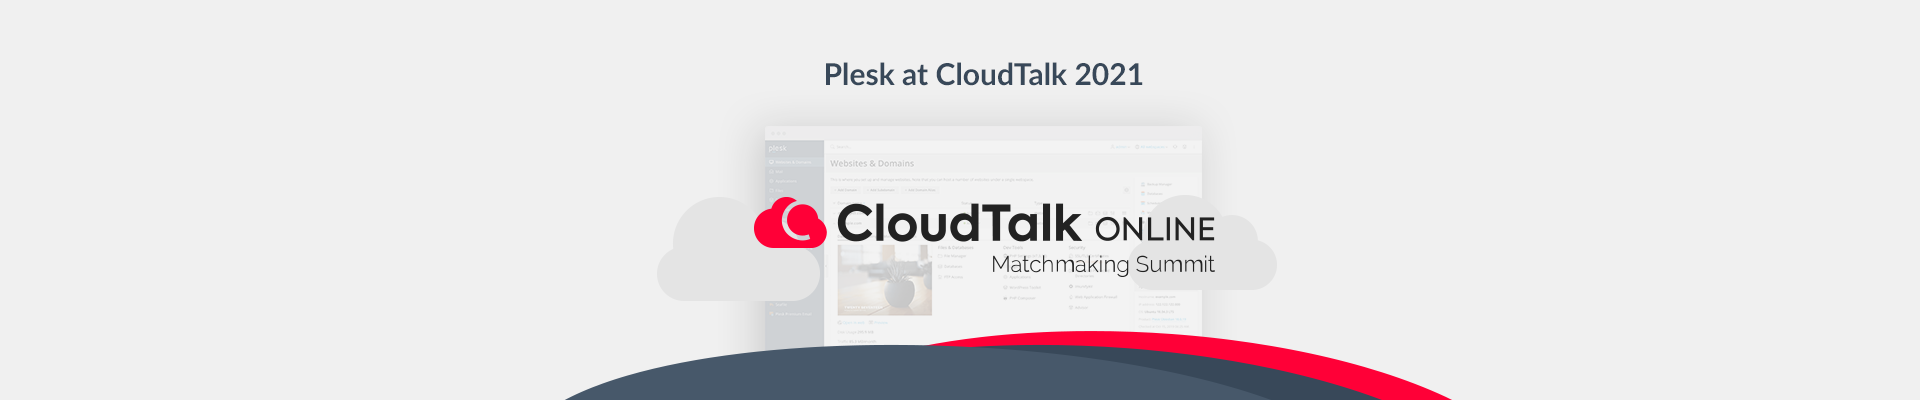 Cloudtalk 2021 Plesk blog